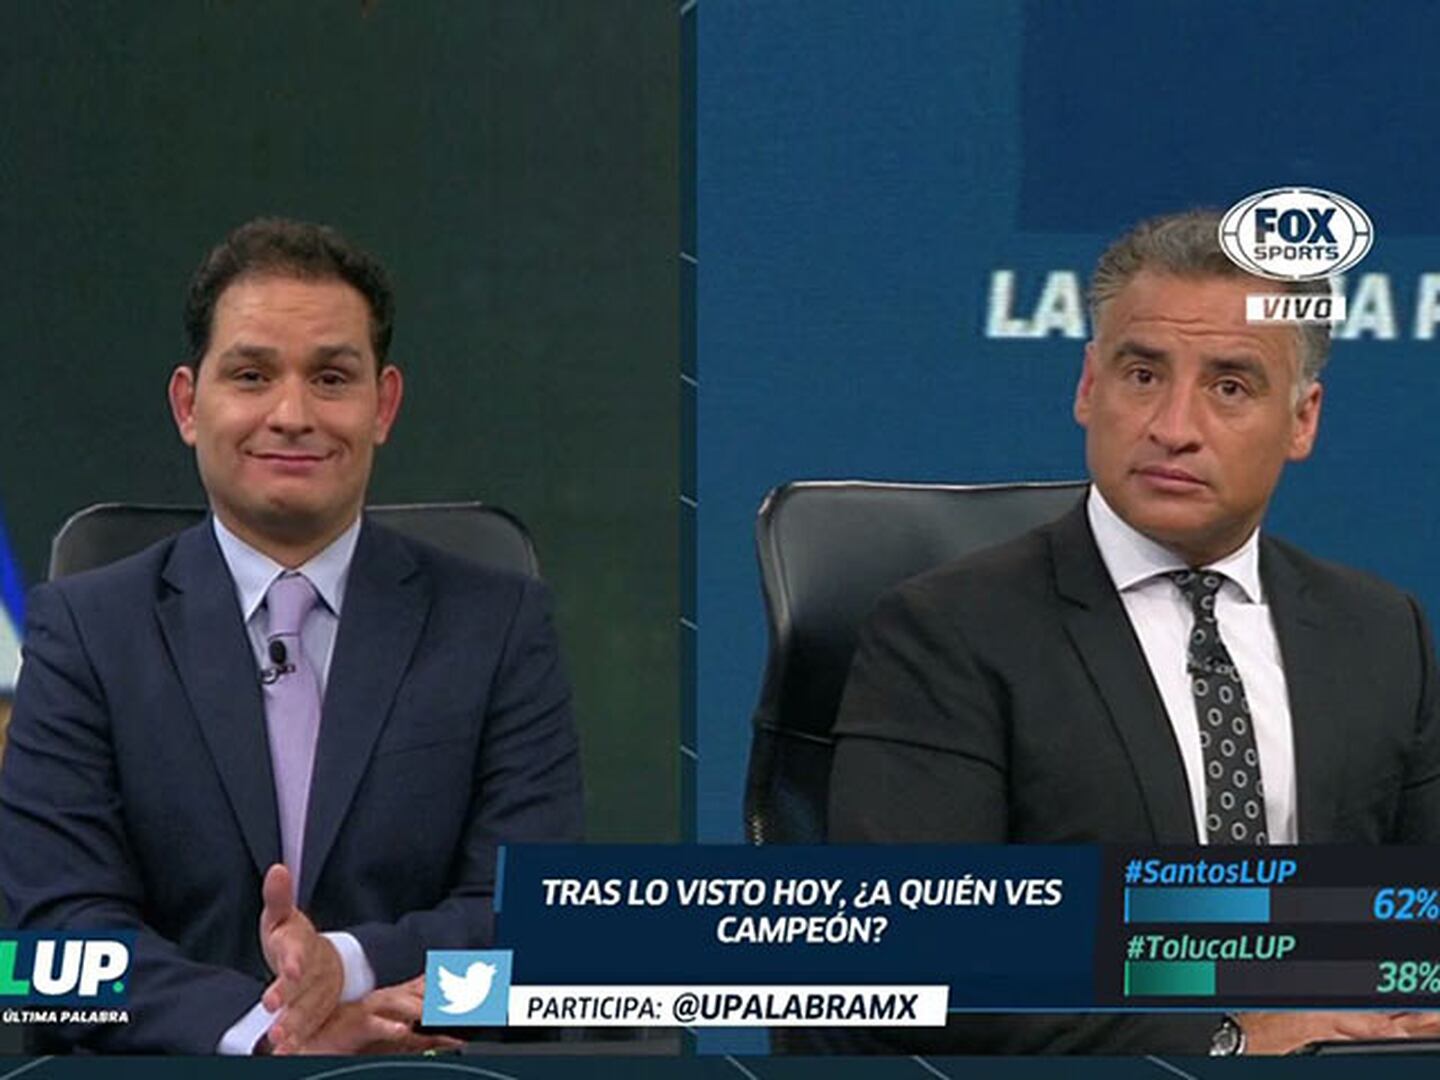 ¿Quién está más nervioso? ¿Gustavo Mendoza o Fabián Estay?